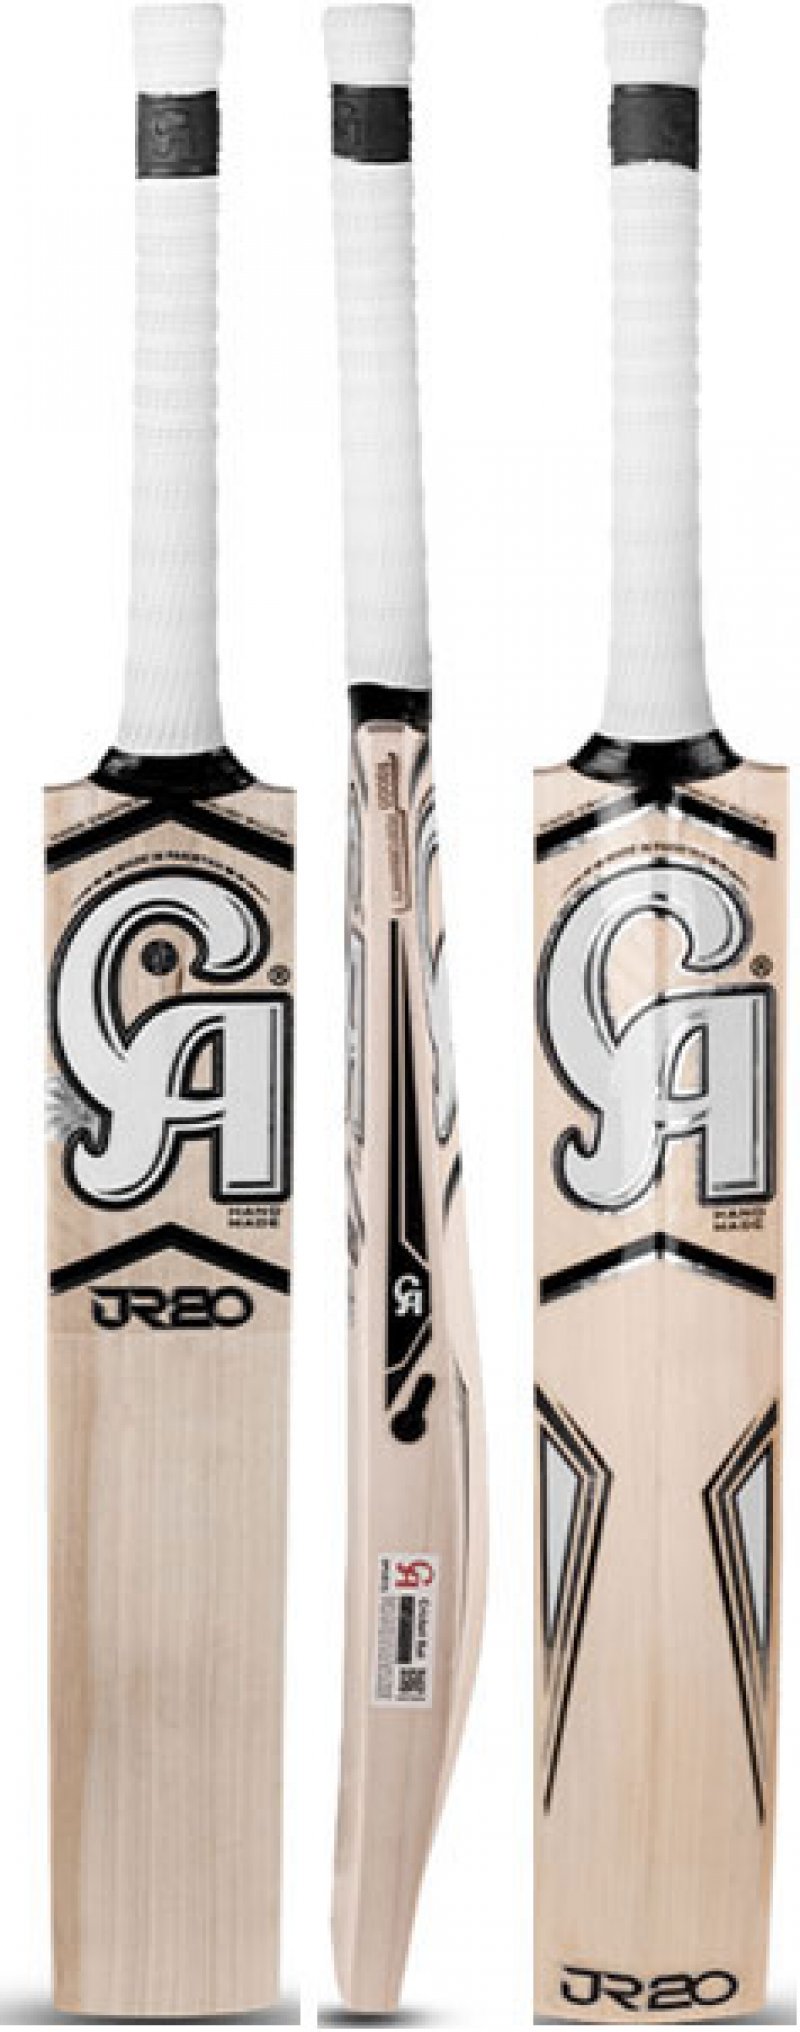 CA JR20 Performance 5000 Cricket Bat